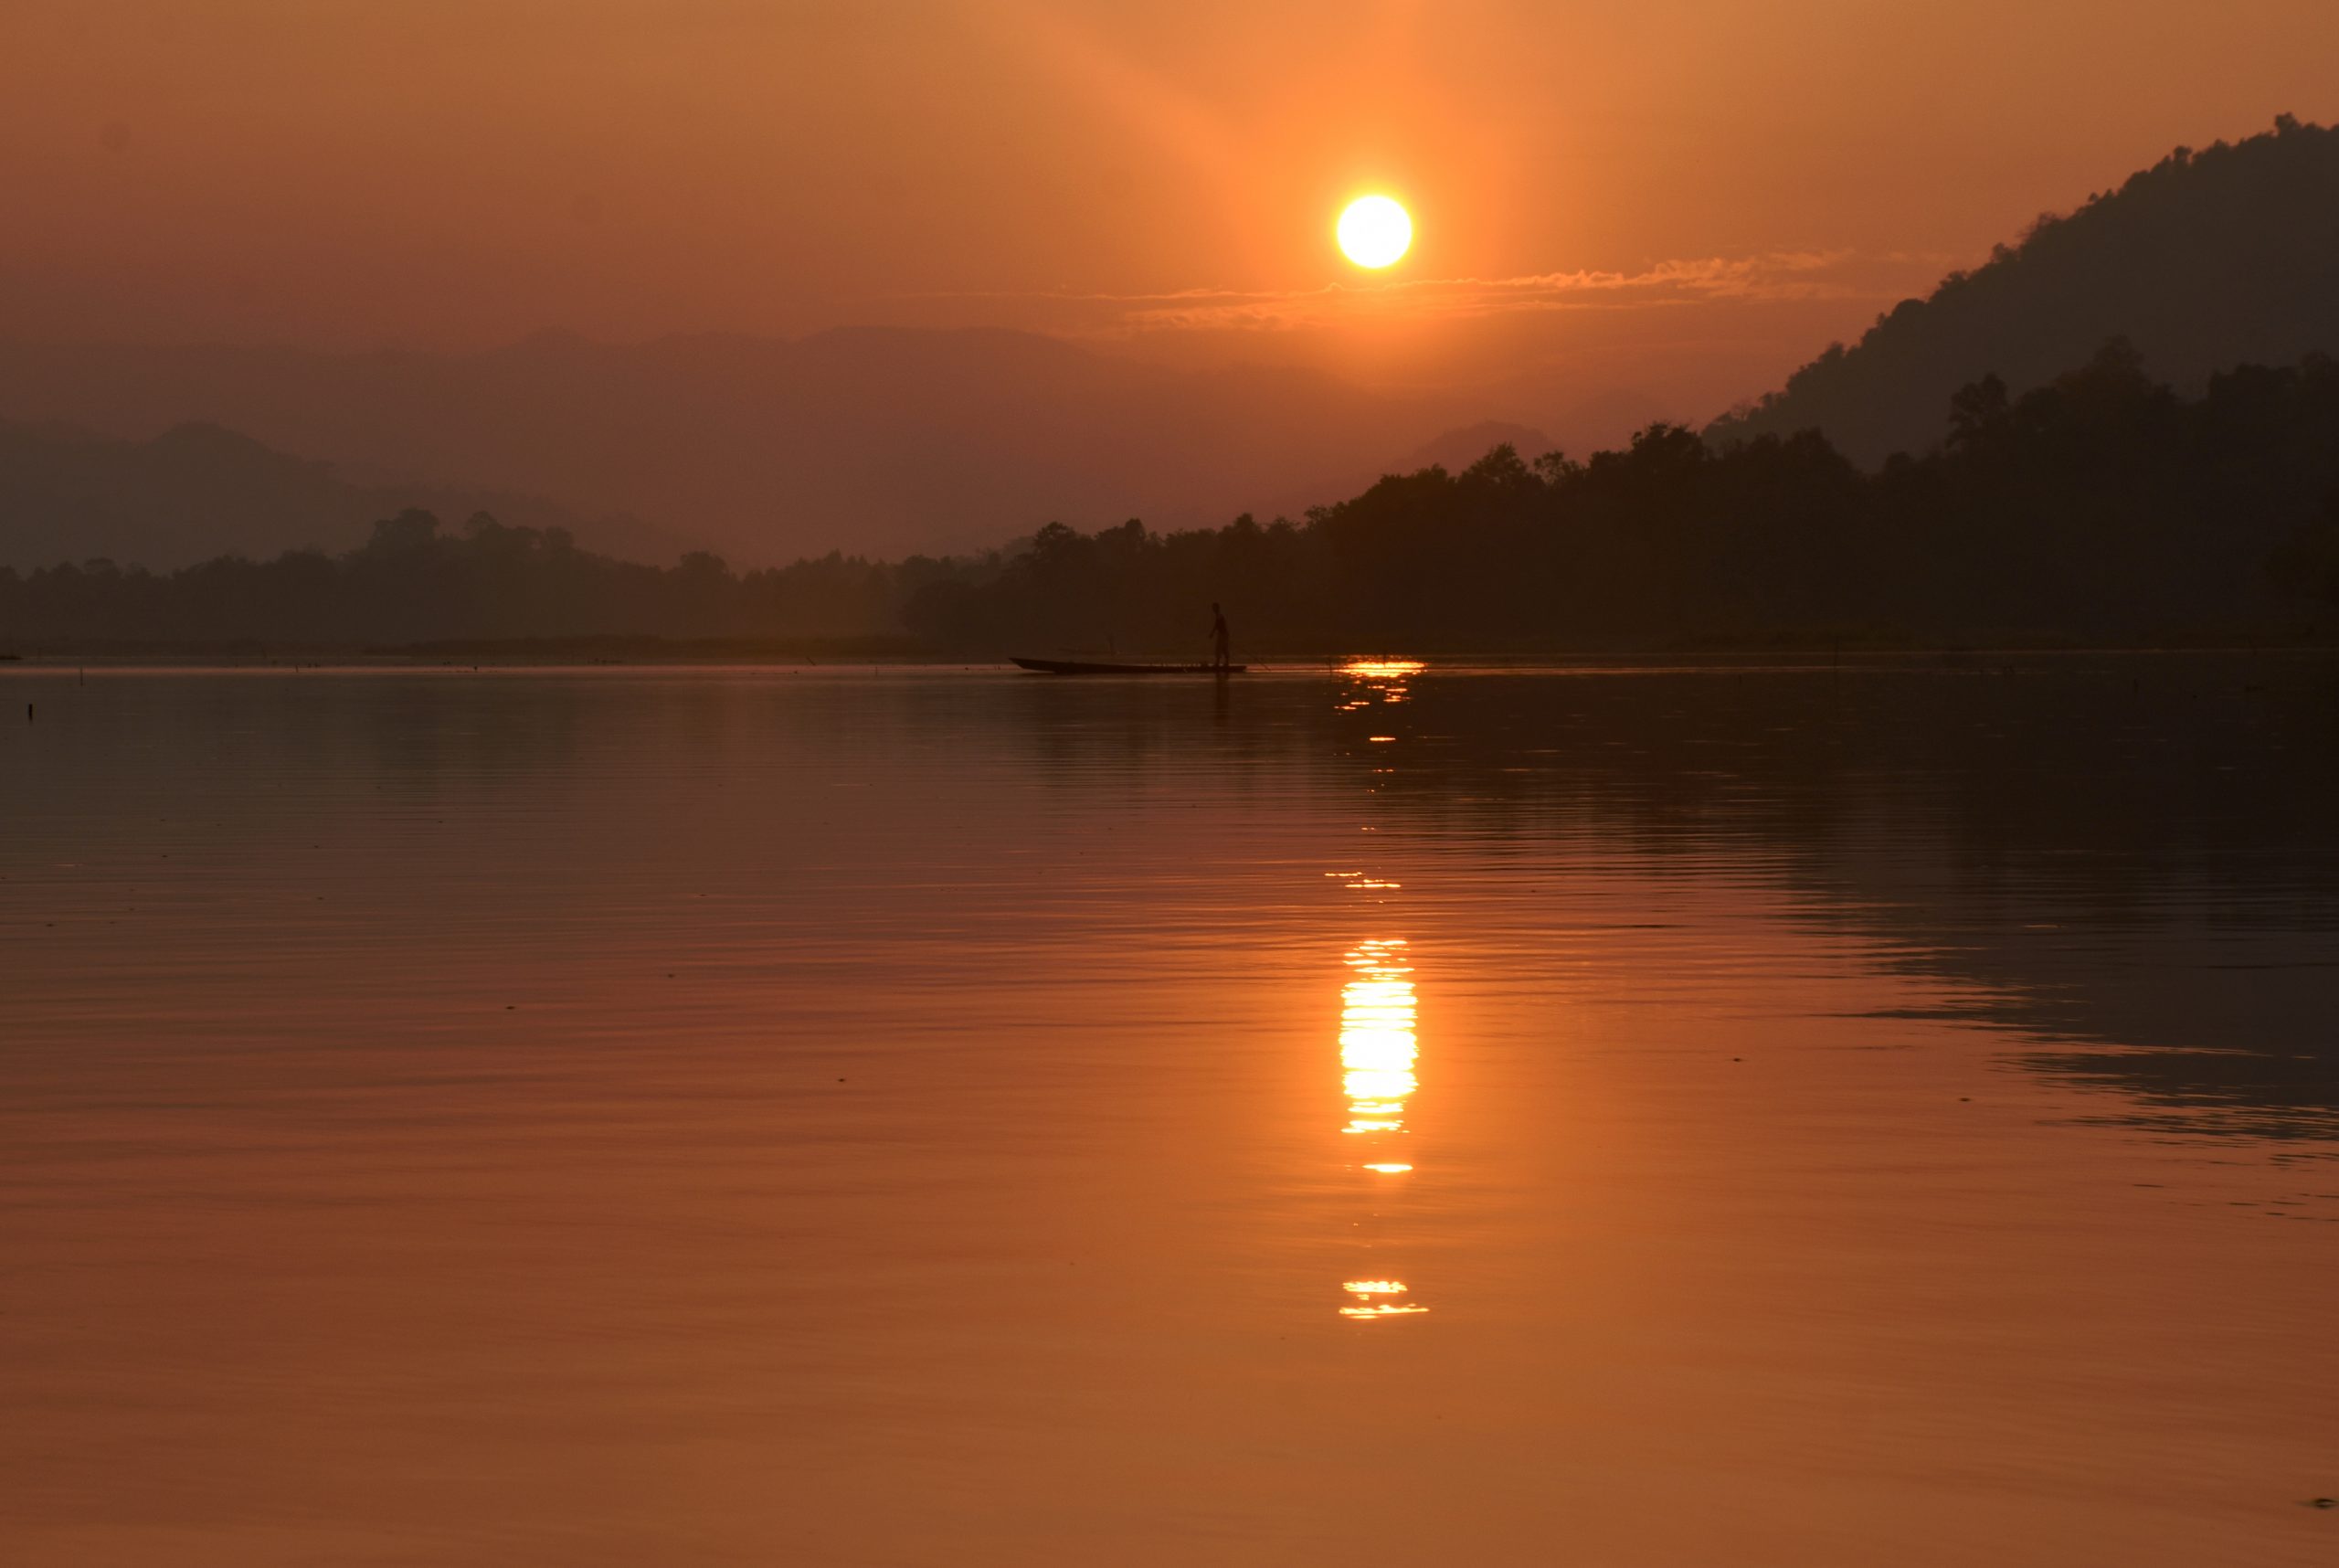 Lake during sunset